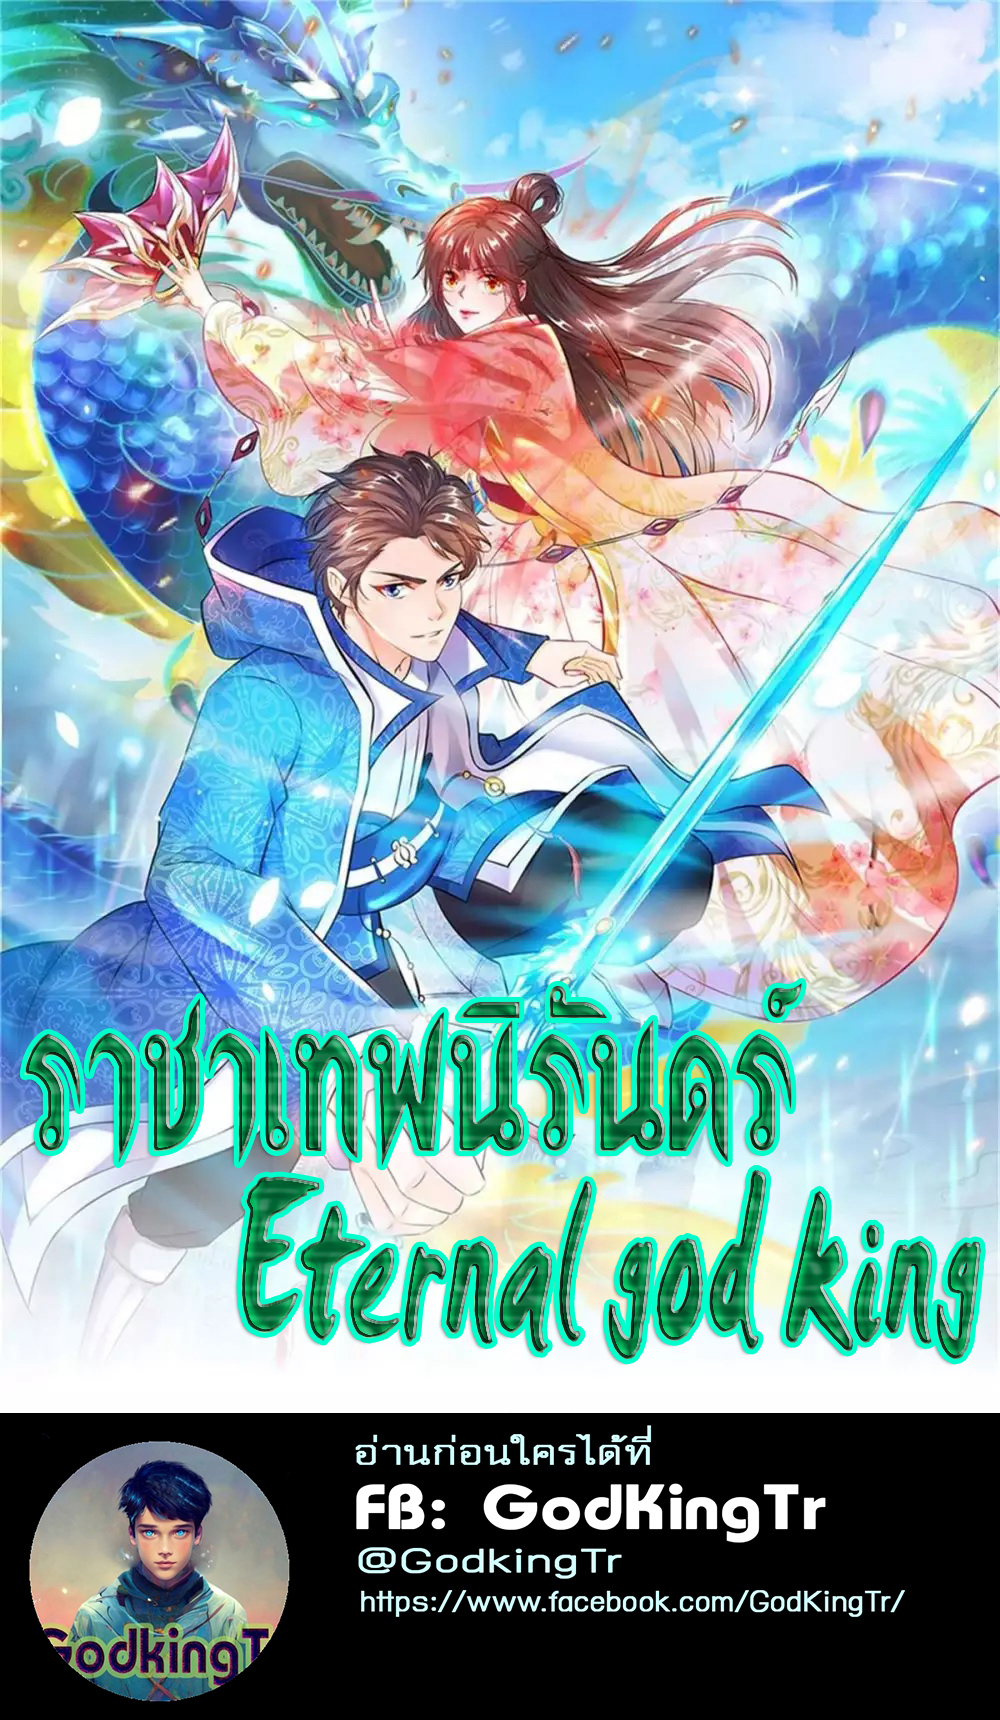 Eternal god king 54 (1)